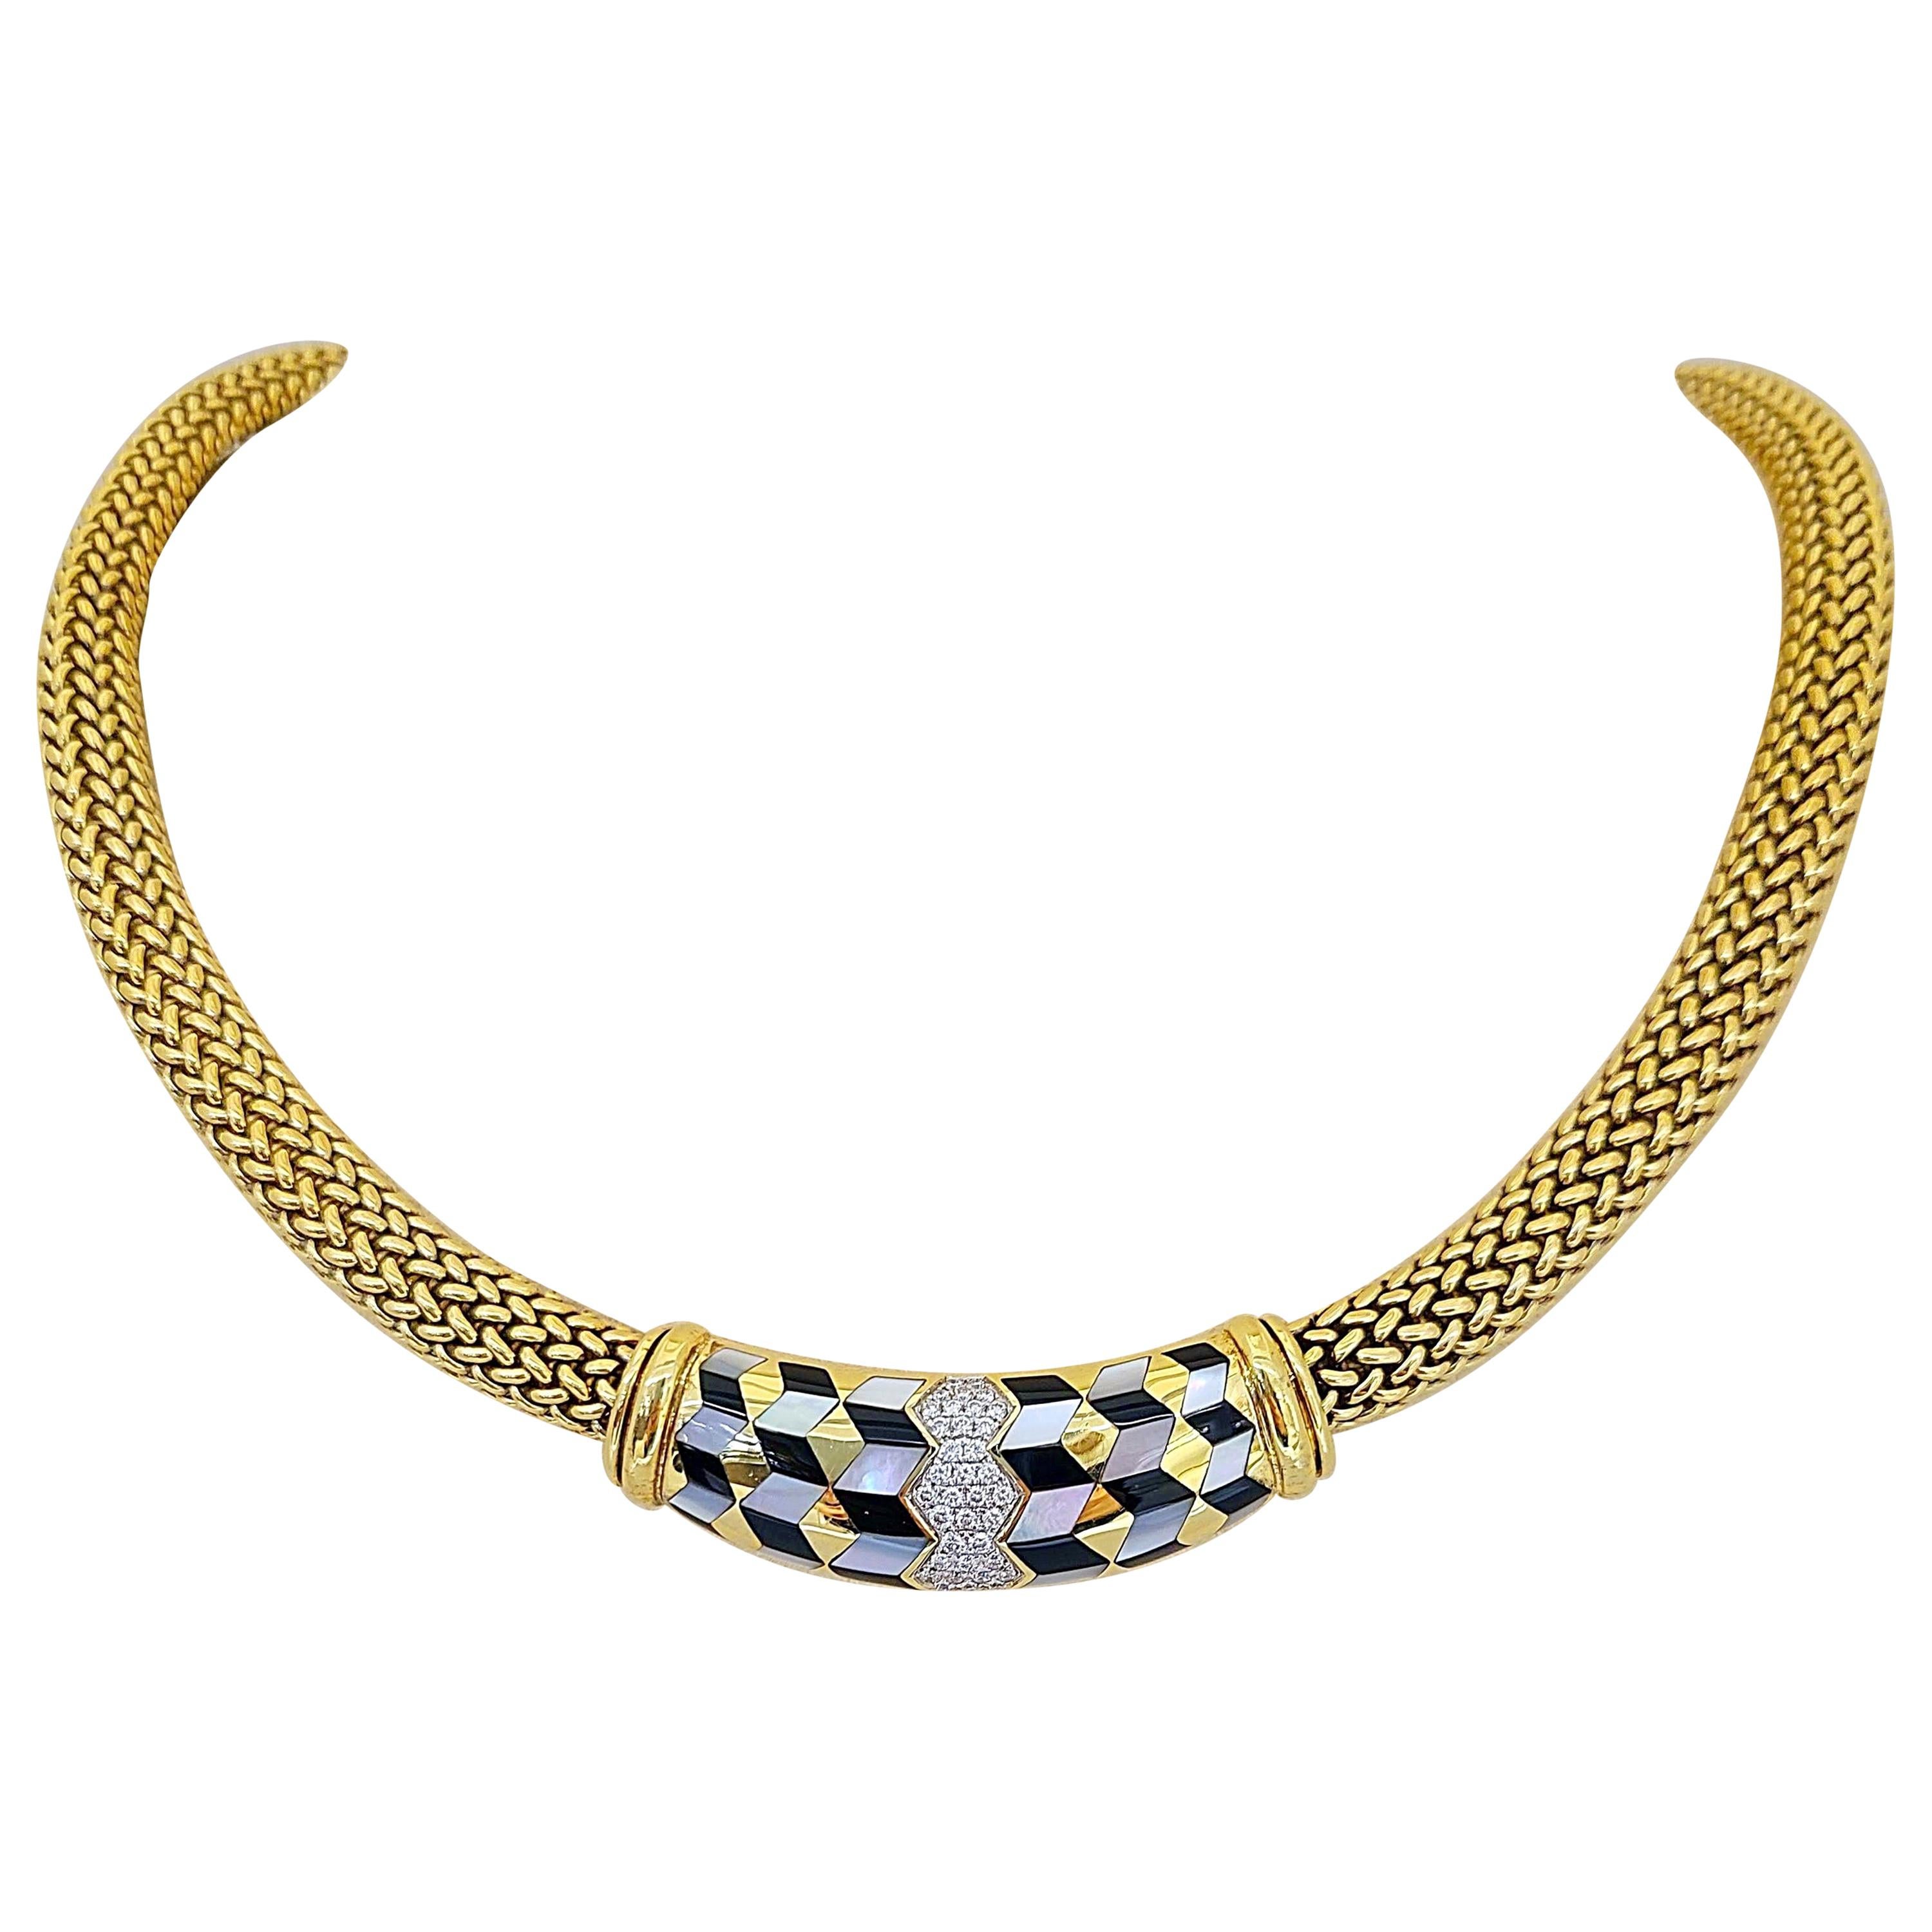 Asch Grossbardt 18 Karat Gold Halskette mit Intarsien aus Onyx, Perlmutt und Diamanten